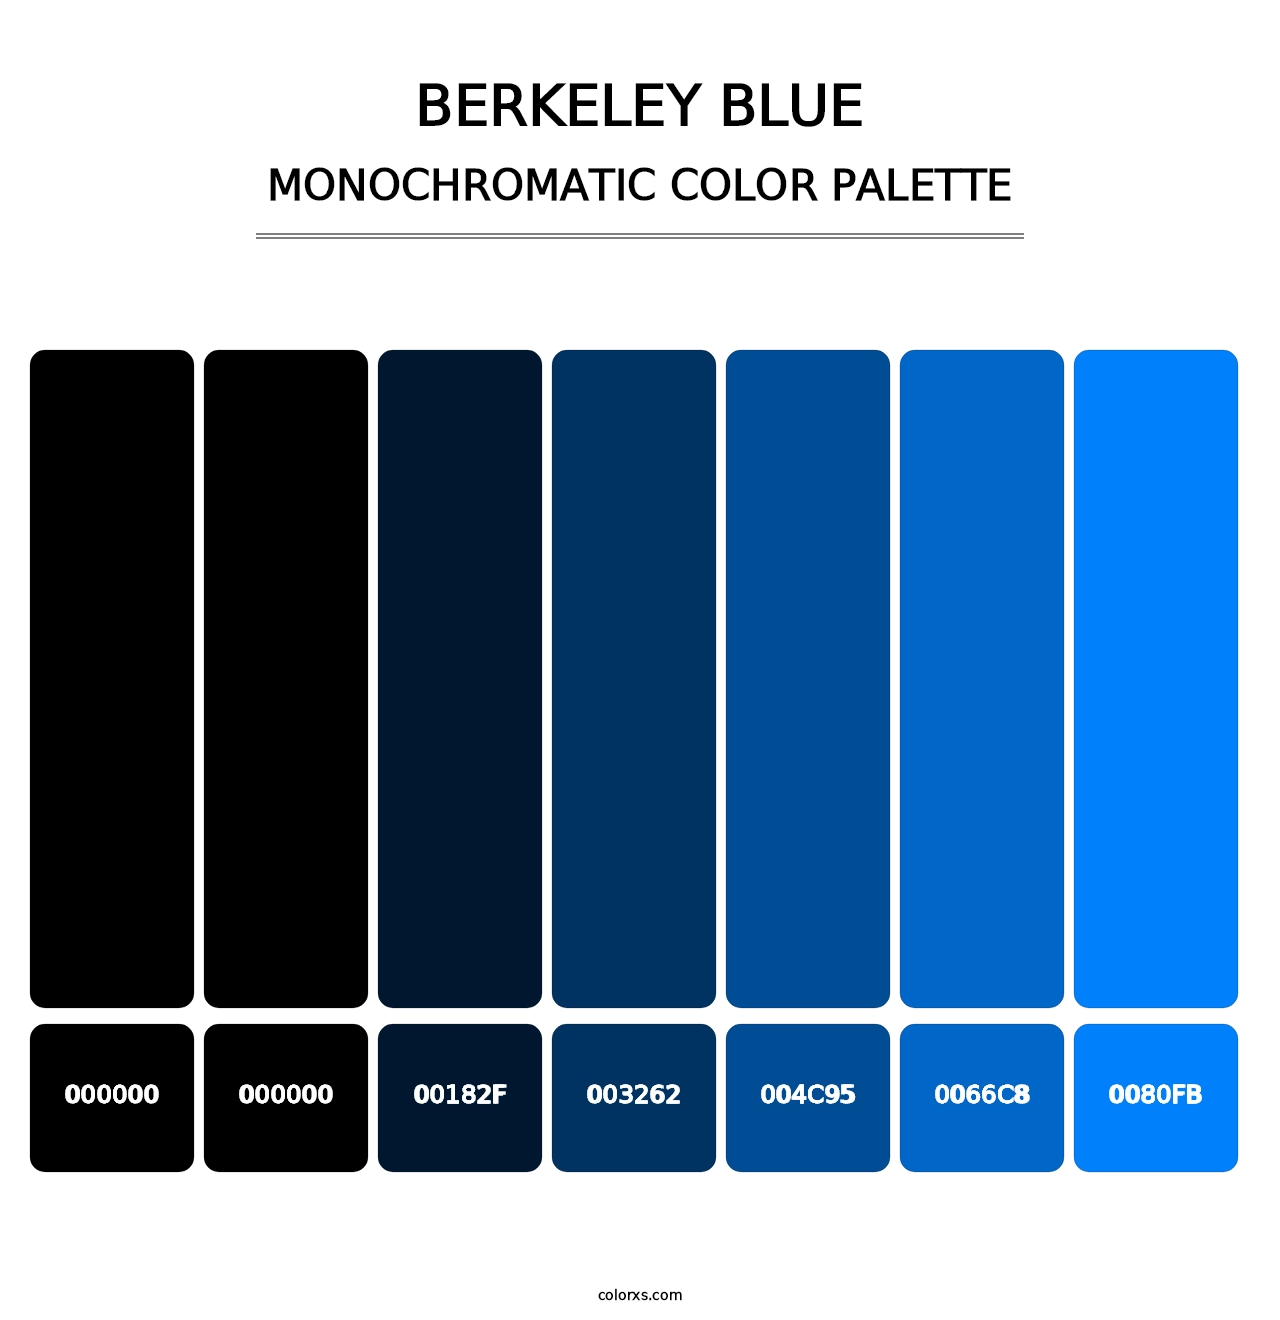 Berkeley Blue - Monochromatic Color Palette